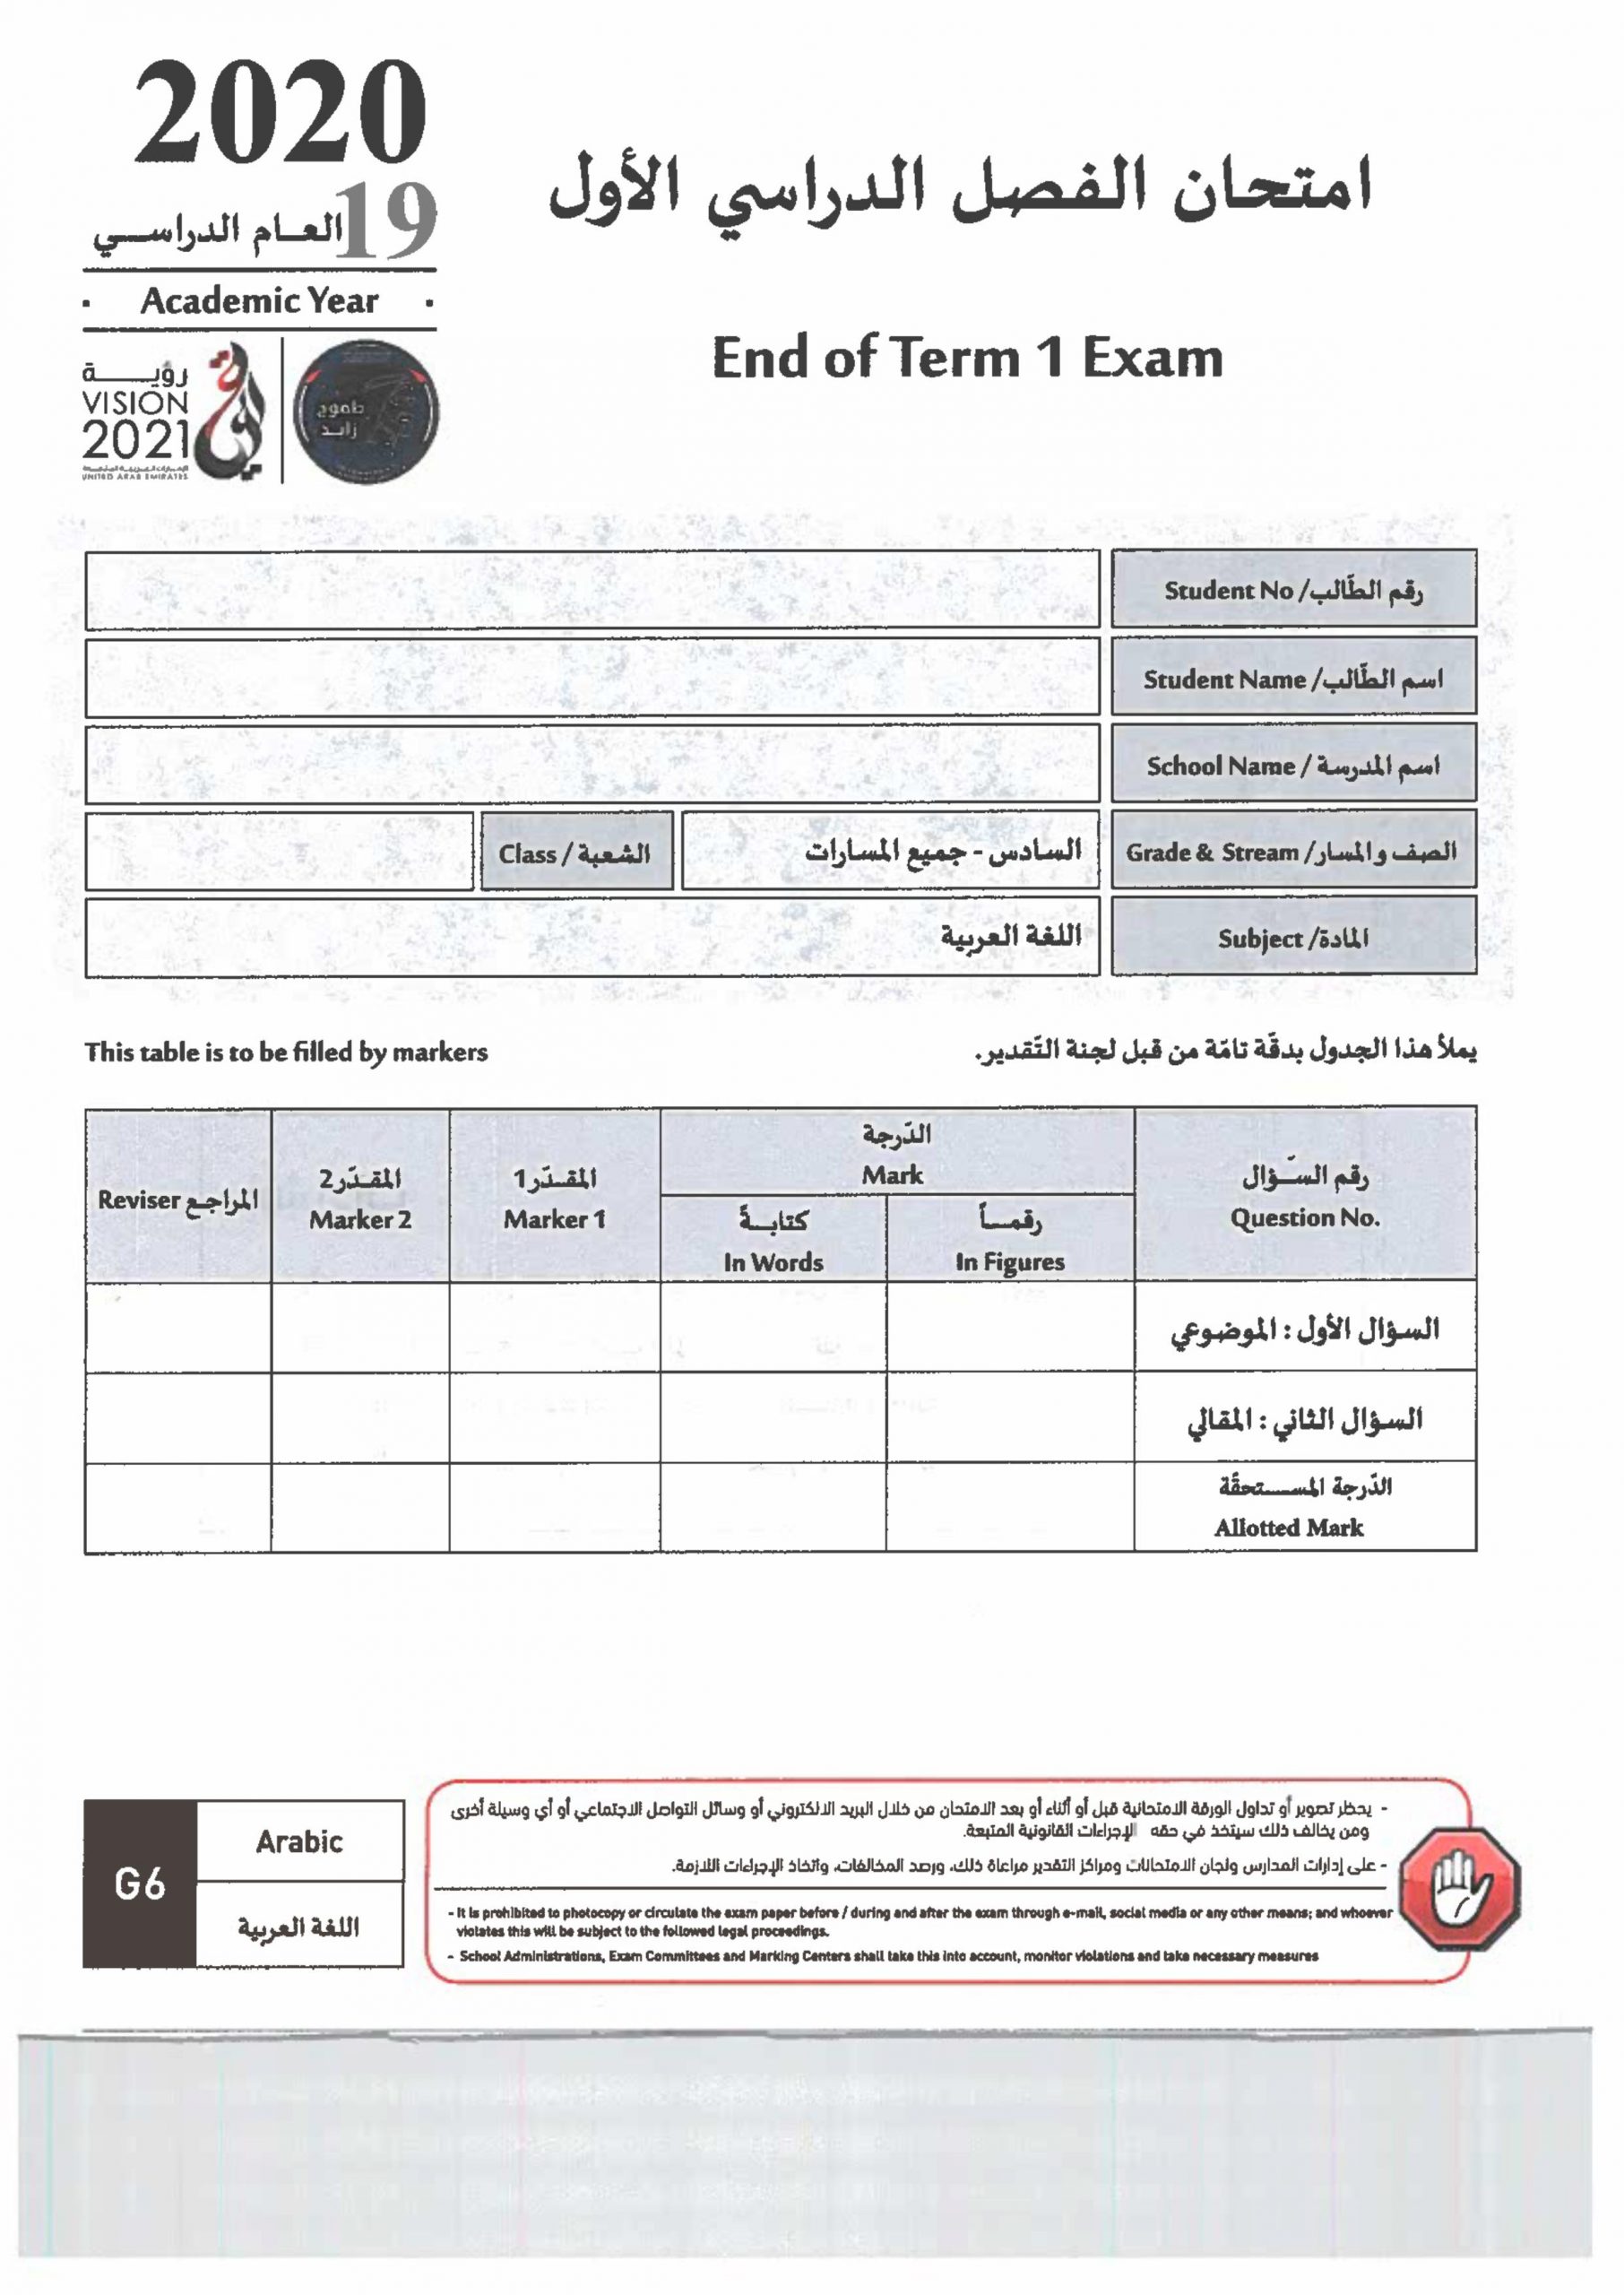 امتحان نهاية الفصل الدراسي الاول 2019-2020 للصف السادس مادة اللغة العربية